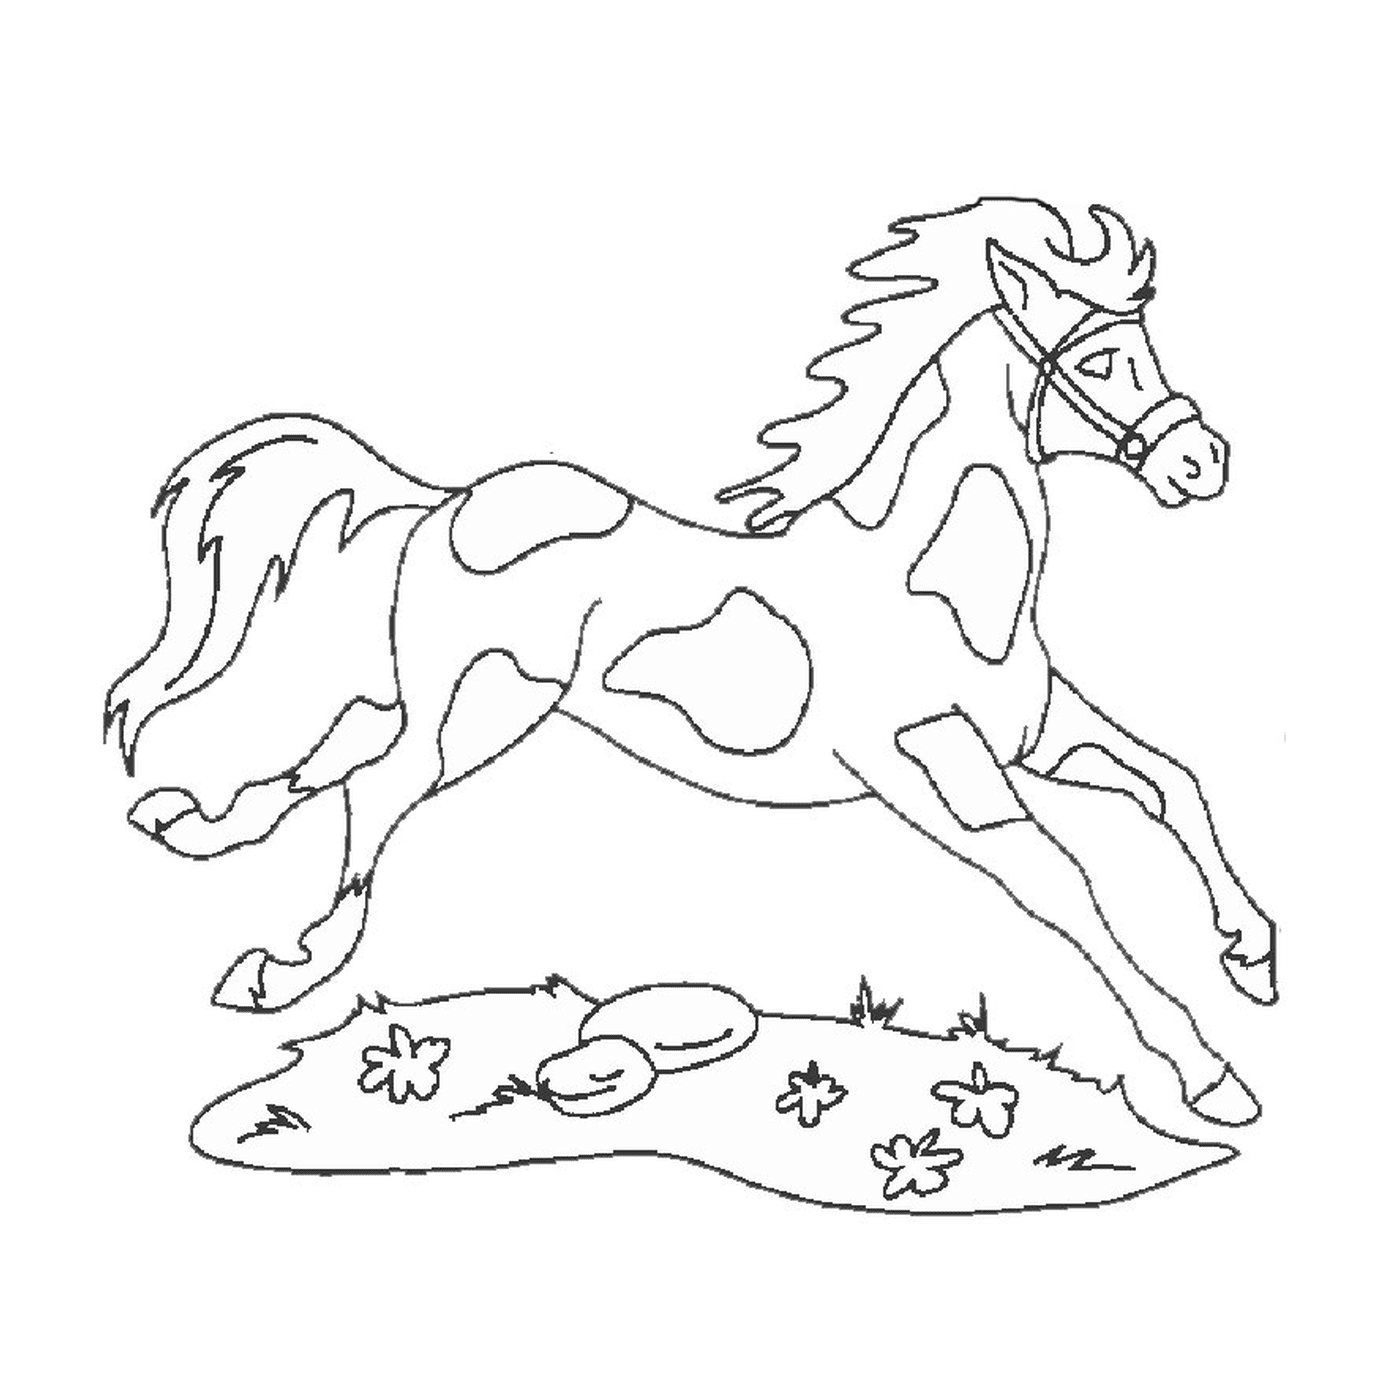  Pferd und Hund - Ein Pferd läuft 